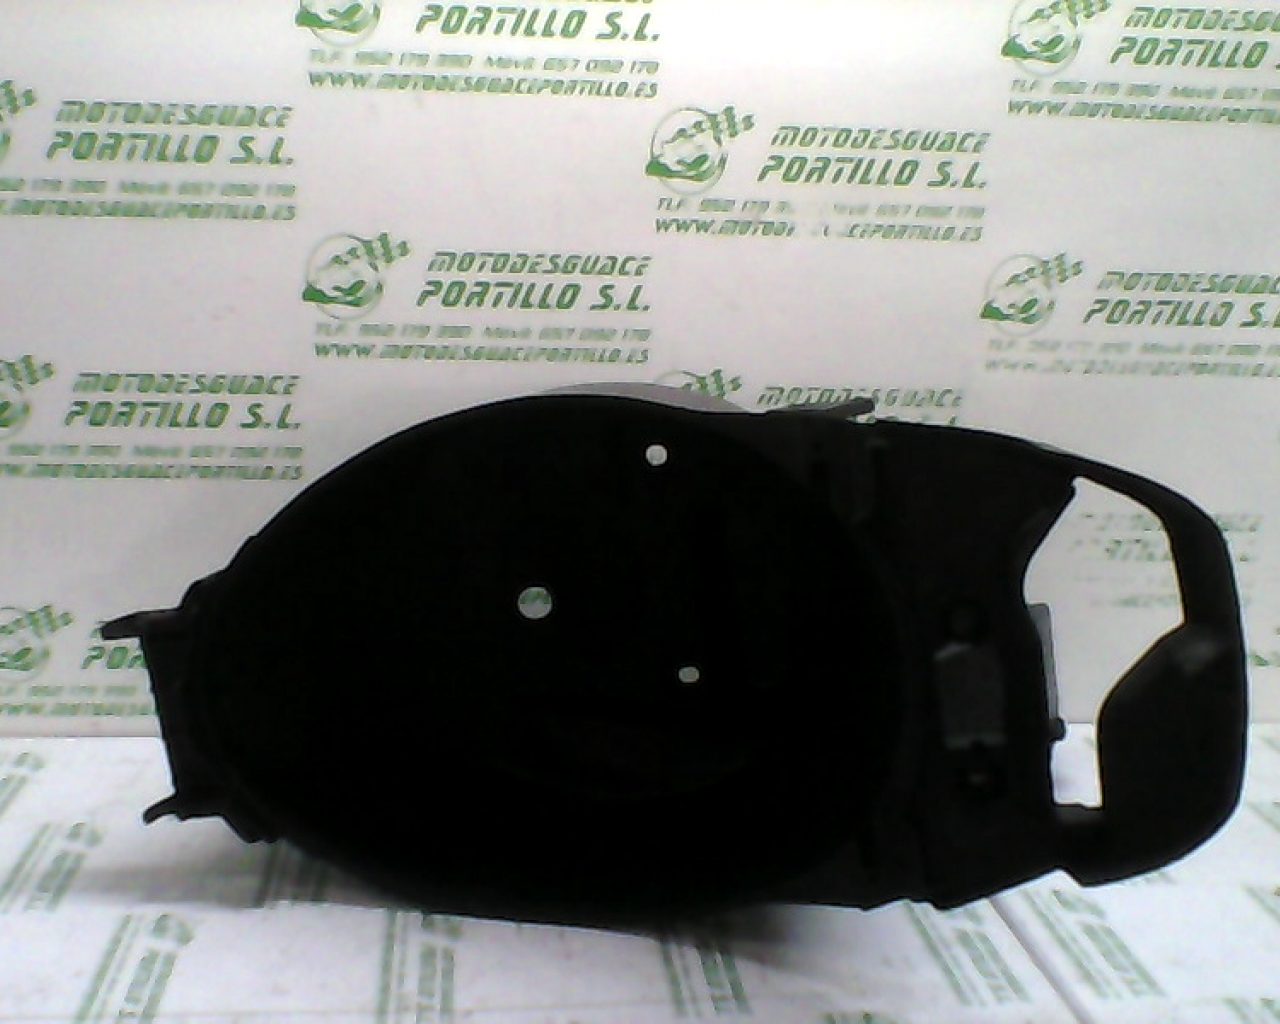 Porta-casco Yamaha axis cosmos  50 (1998-2000)